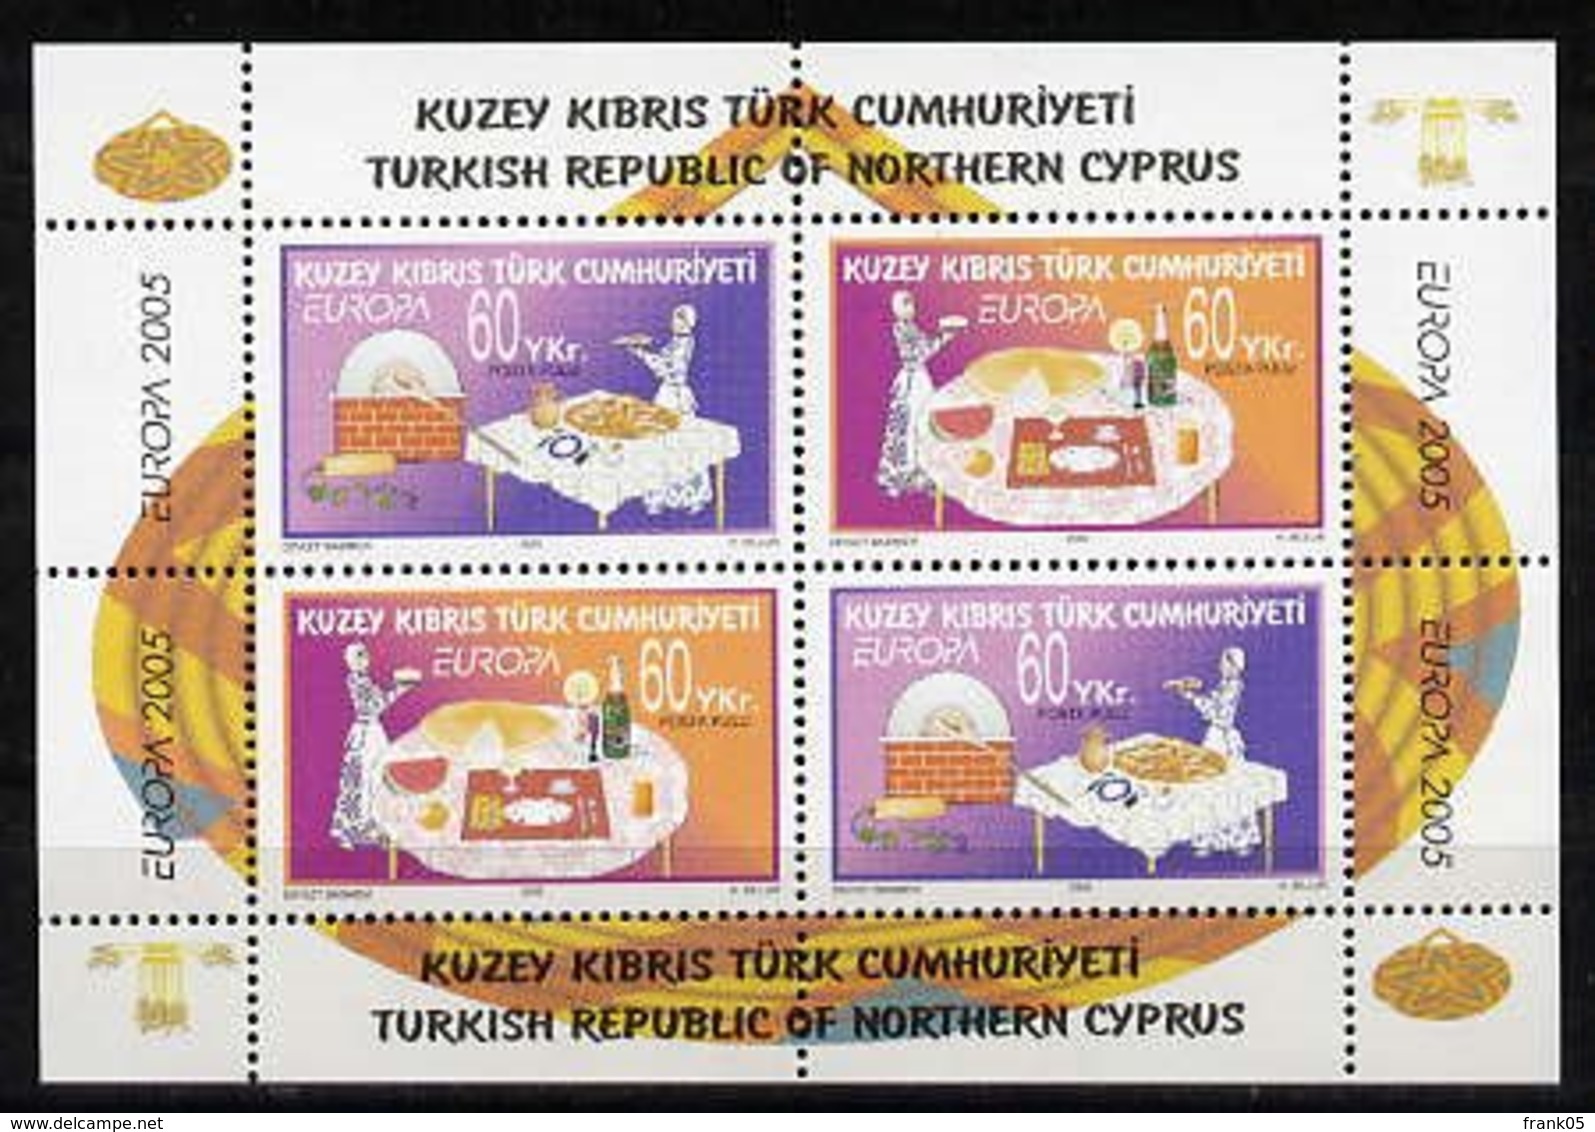 Türkisch-Zypern / Turkish Republic Of Northern Cyprus / Chypre Turc 2005 Block EUROPA ** - 2005